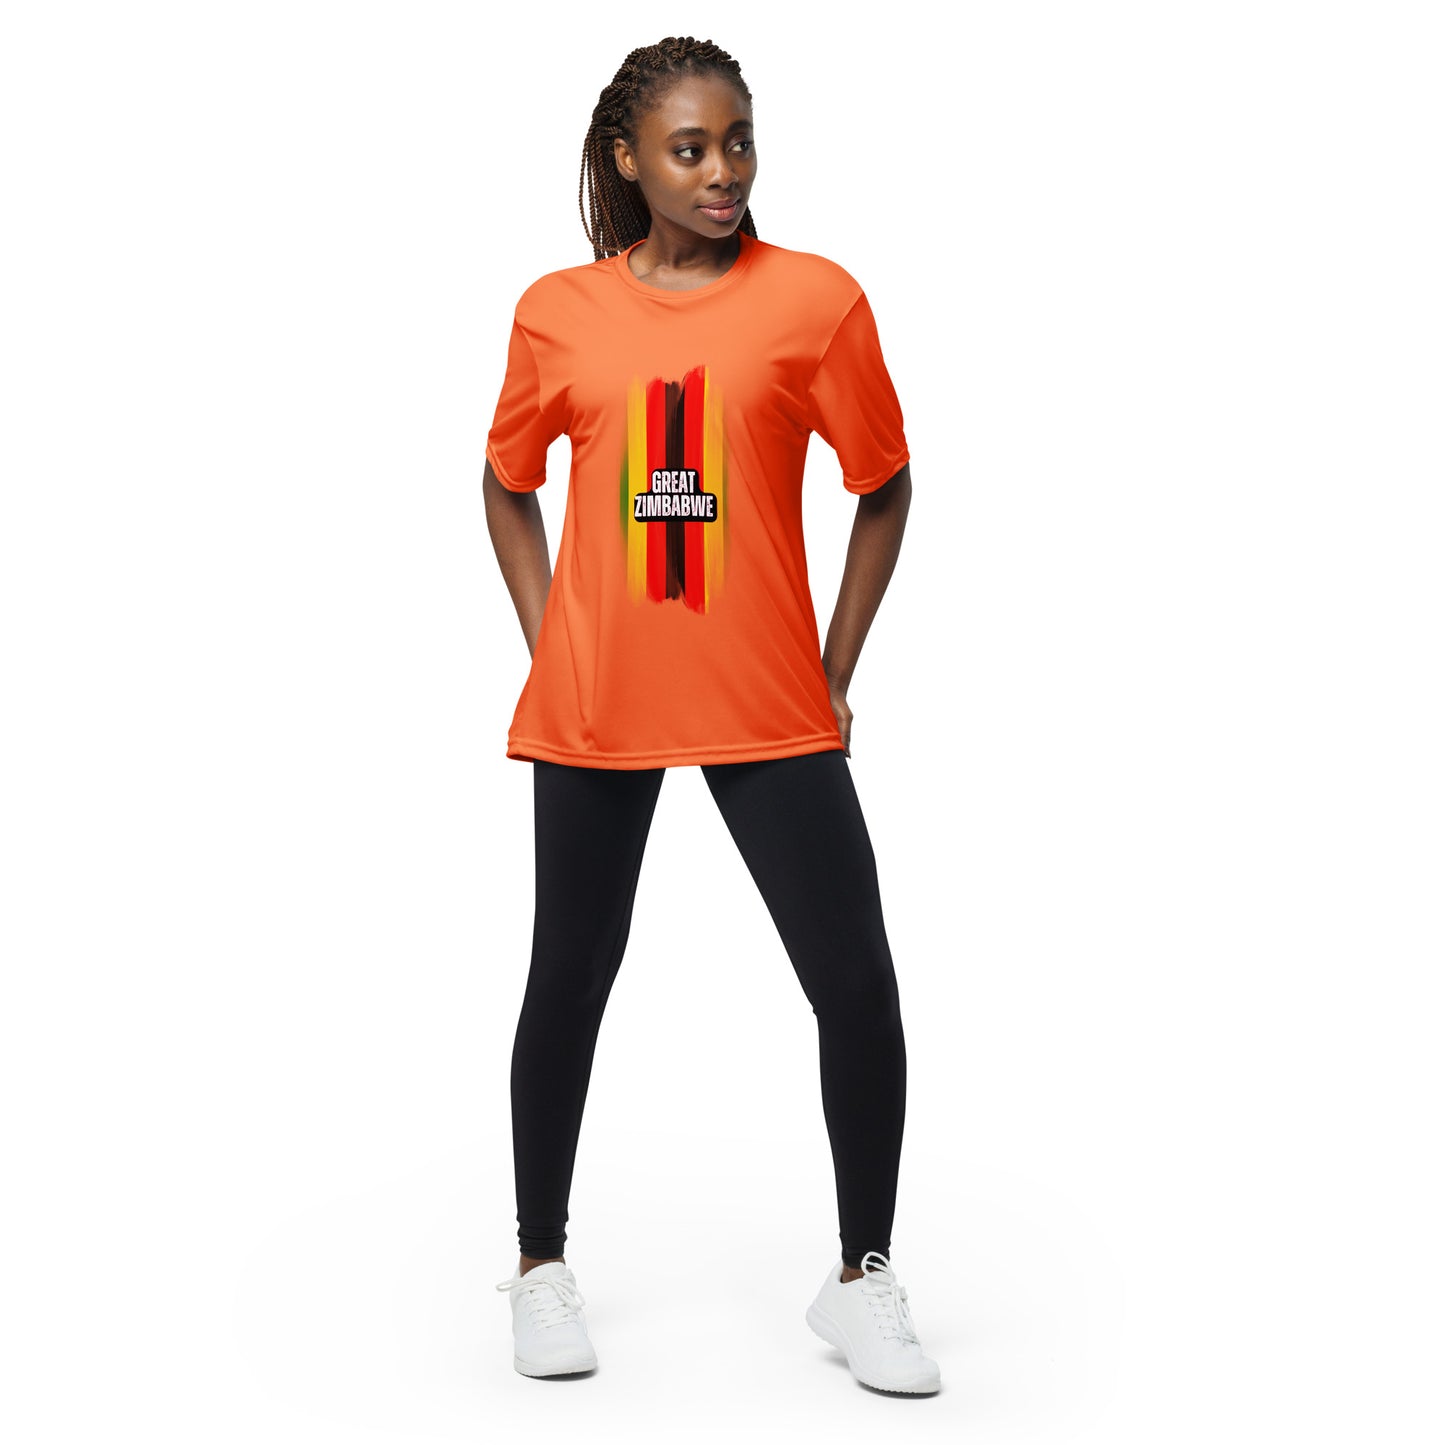 Unisex performance crew neck Great Zimbabwe t-shirt